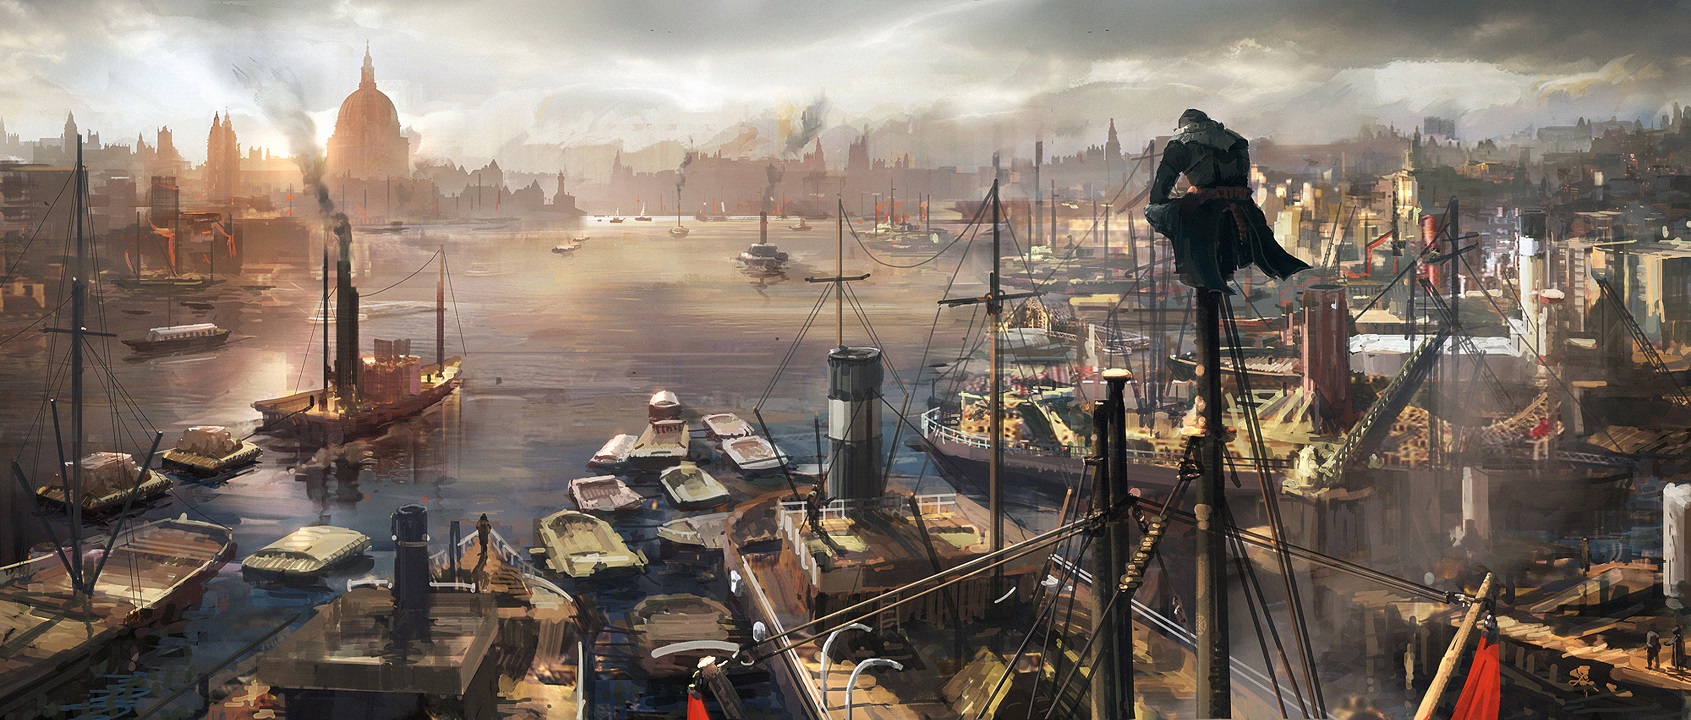 Giám đốc nghệ thuật Assassin's Creed rời Ubisoft sau 16 năm gắn bó